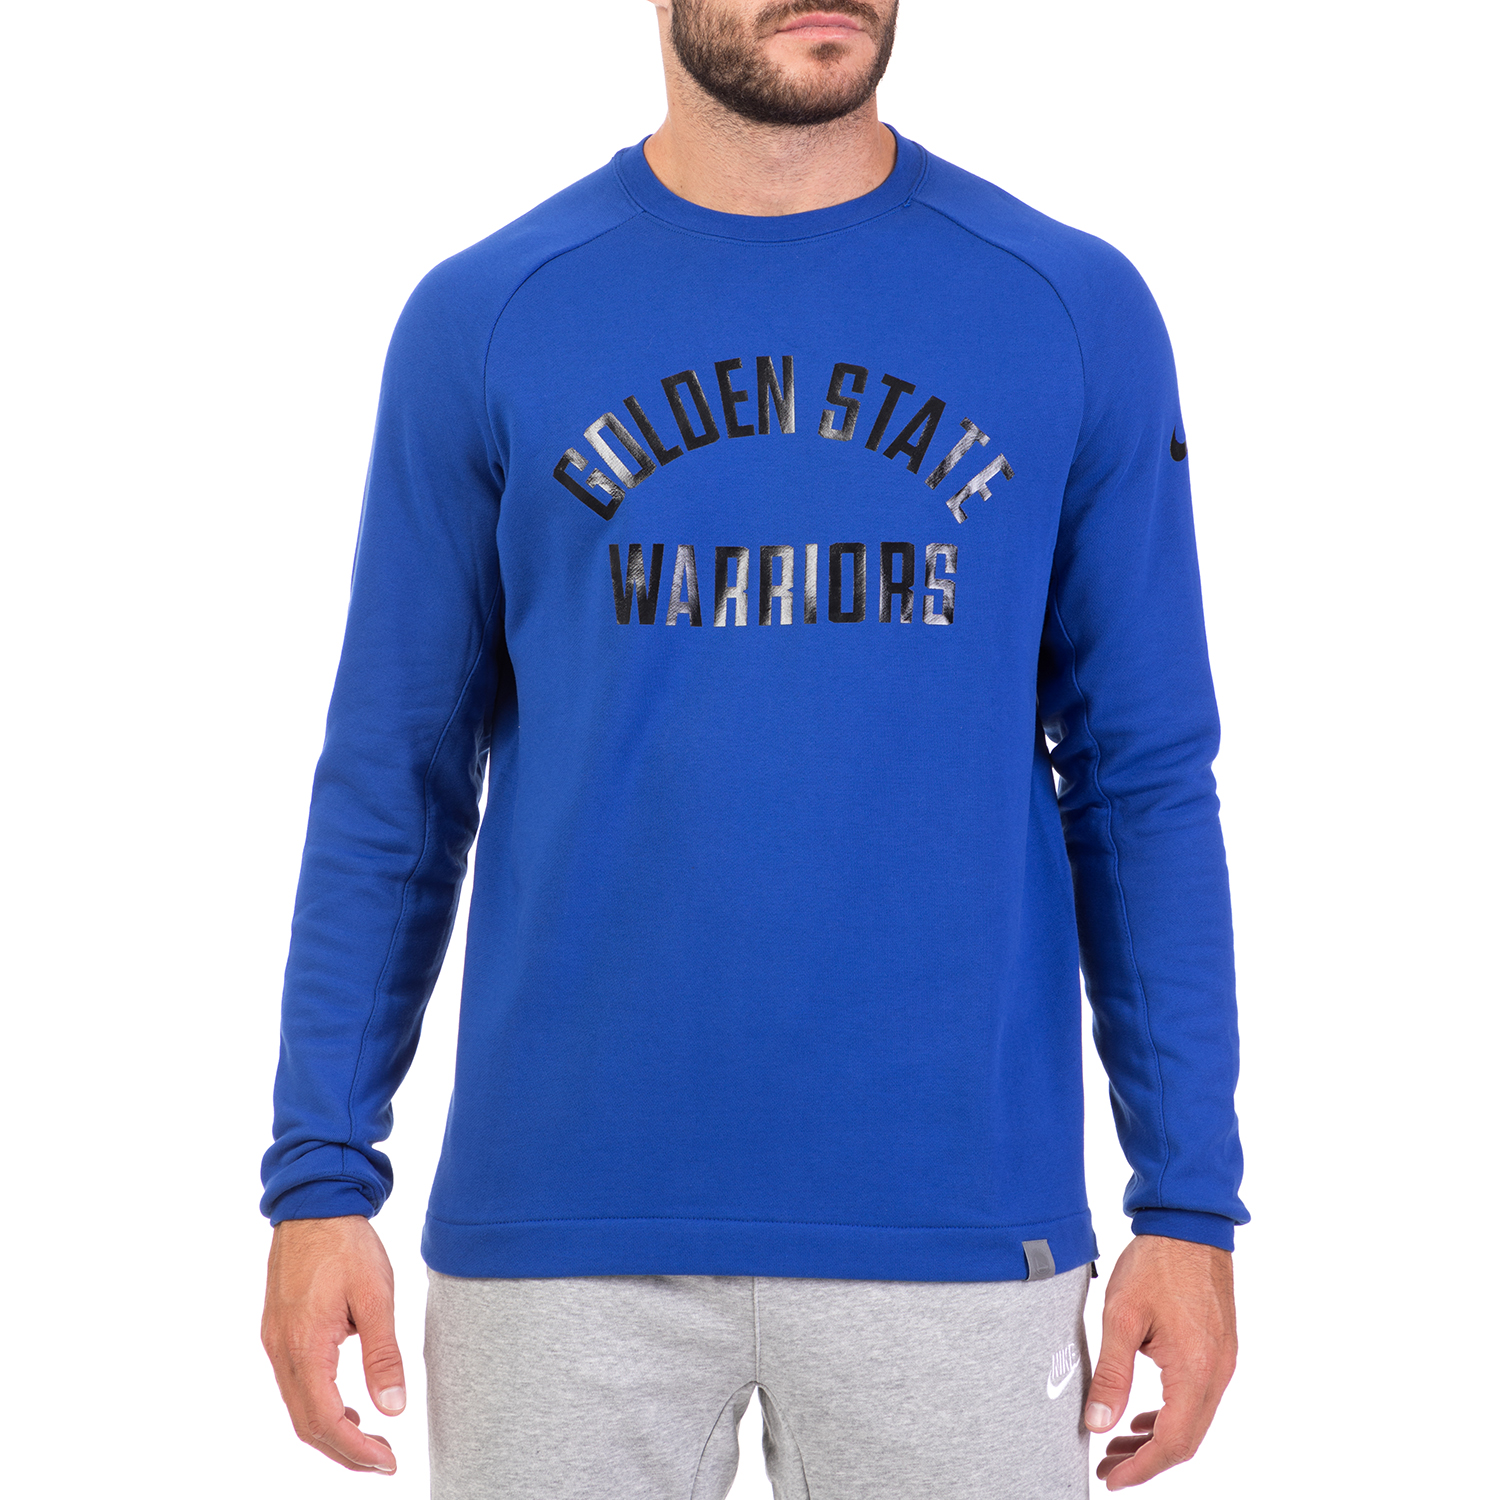 Ανδρικά/Ρούχα/Αθλητικά/Φούτερ-Μακρυμάνικα NIKE - Ανδρική φούτερ μπλούζα NIKE MDRN CREW FT μπλε